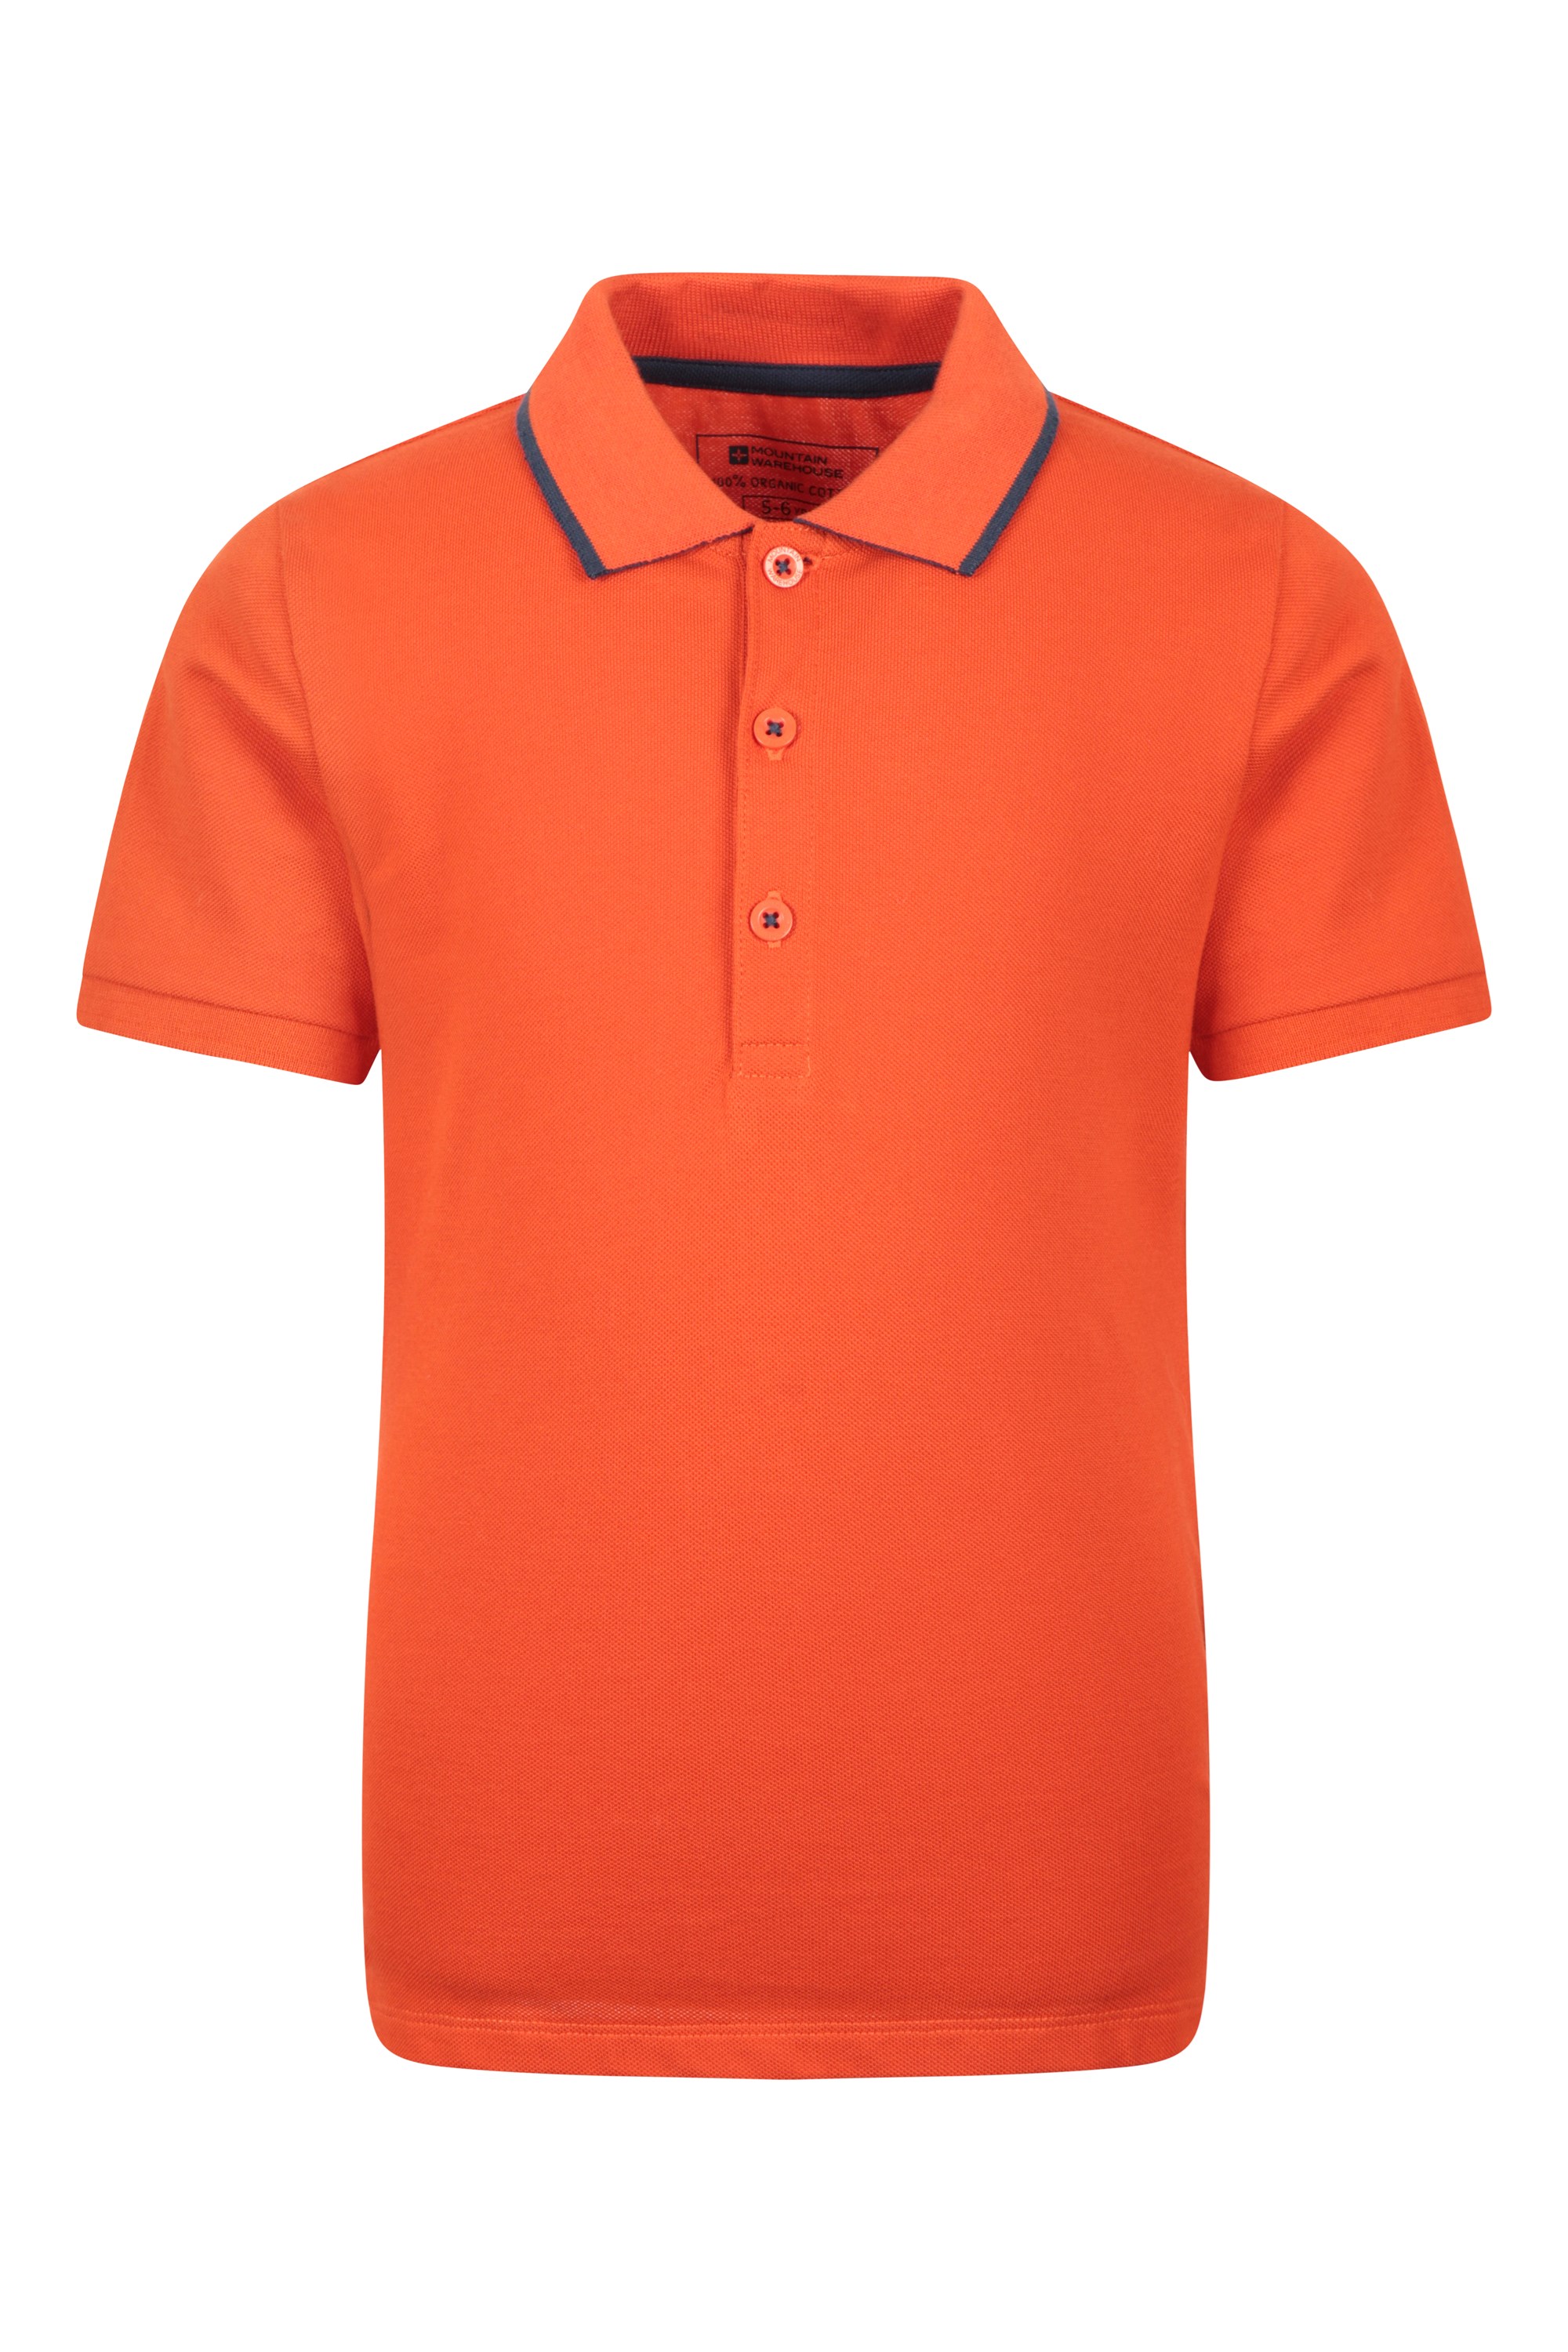 Mountain Warehouse - Plain - dziecięca koszulka polo z bawełny organicznej - orange